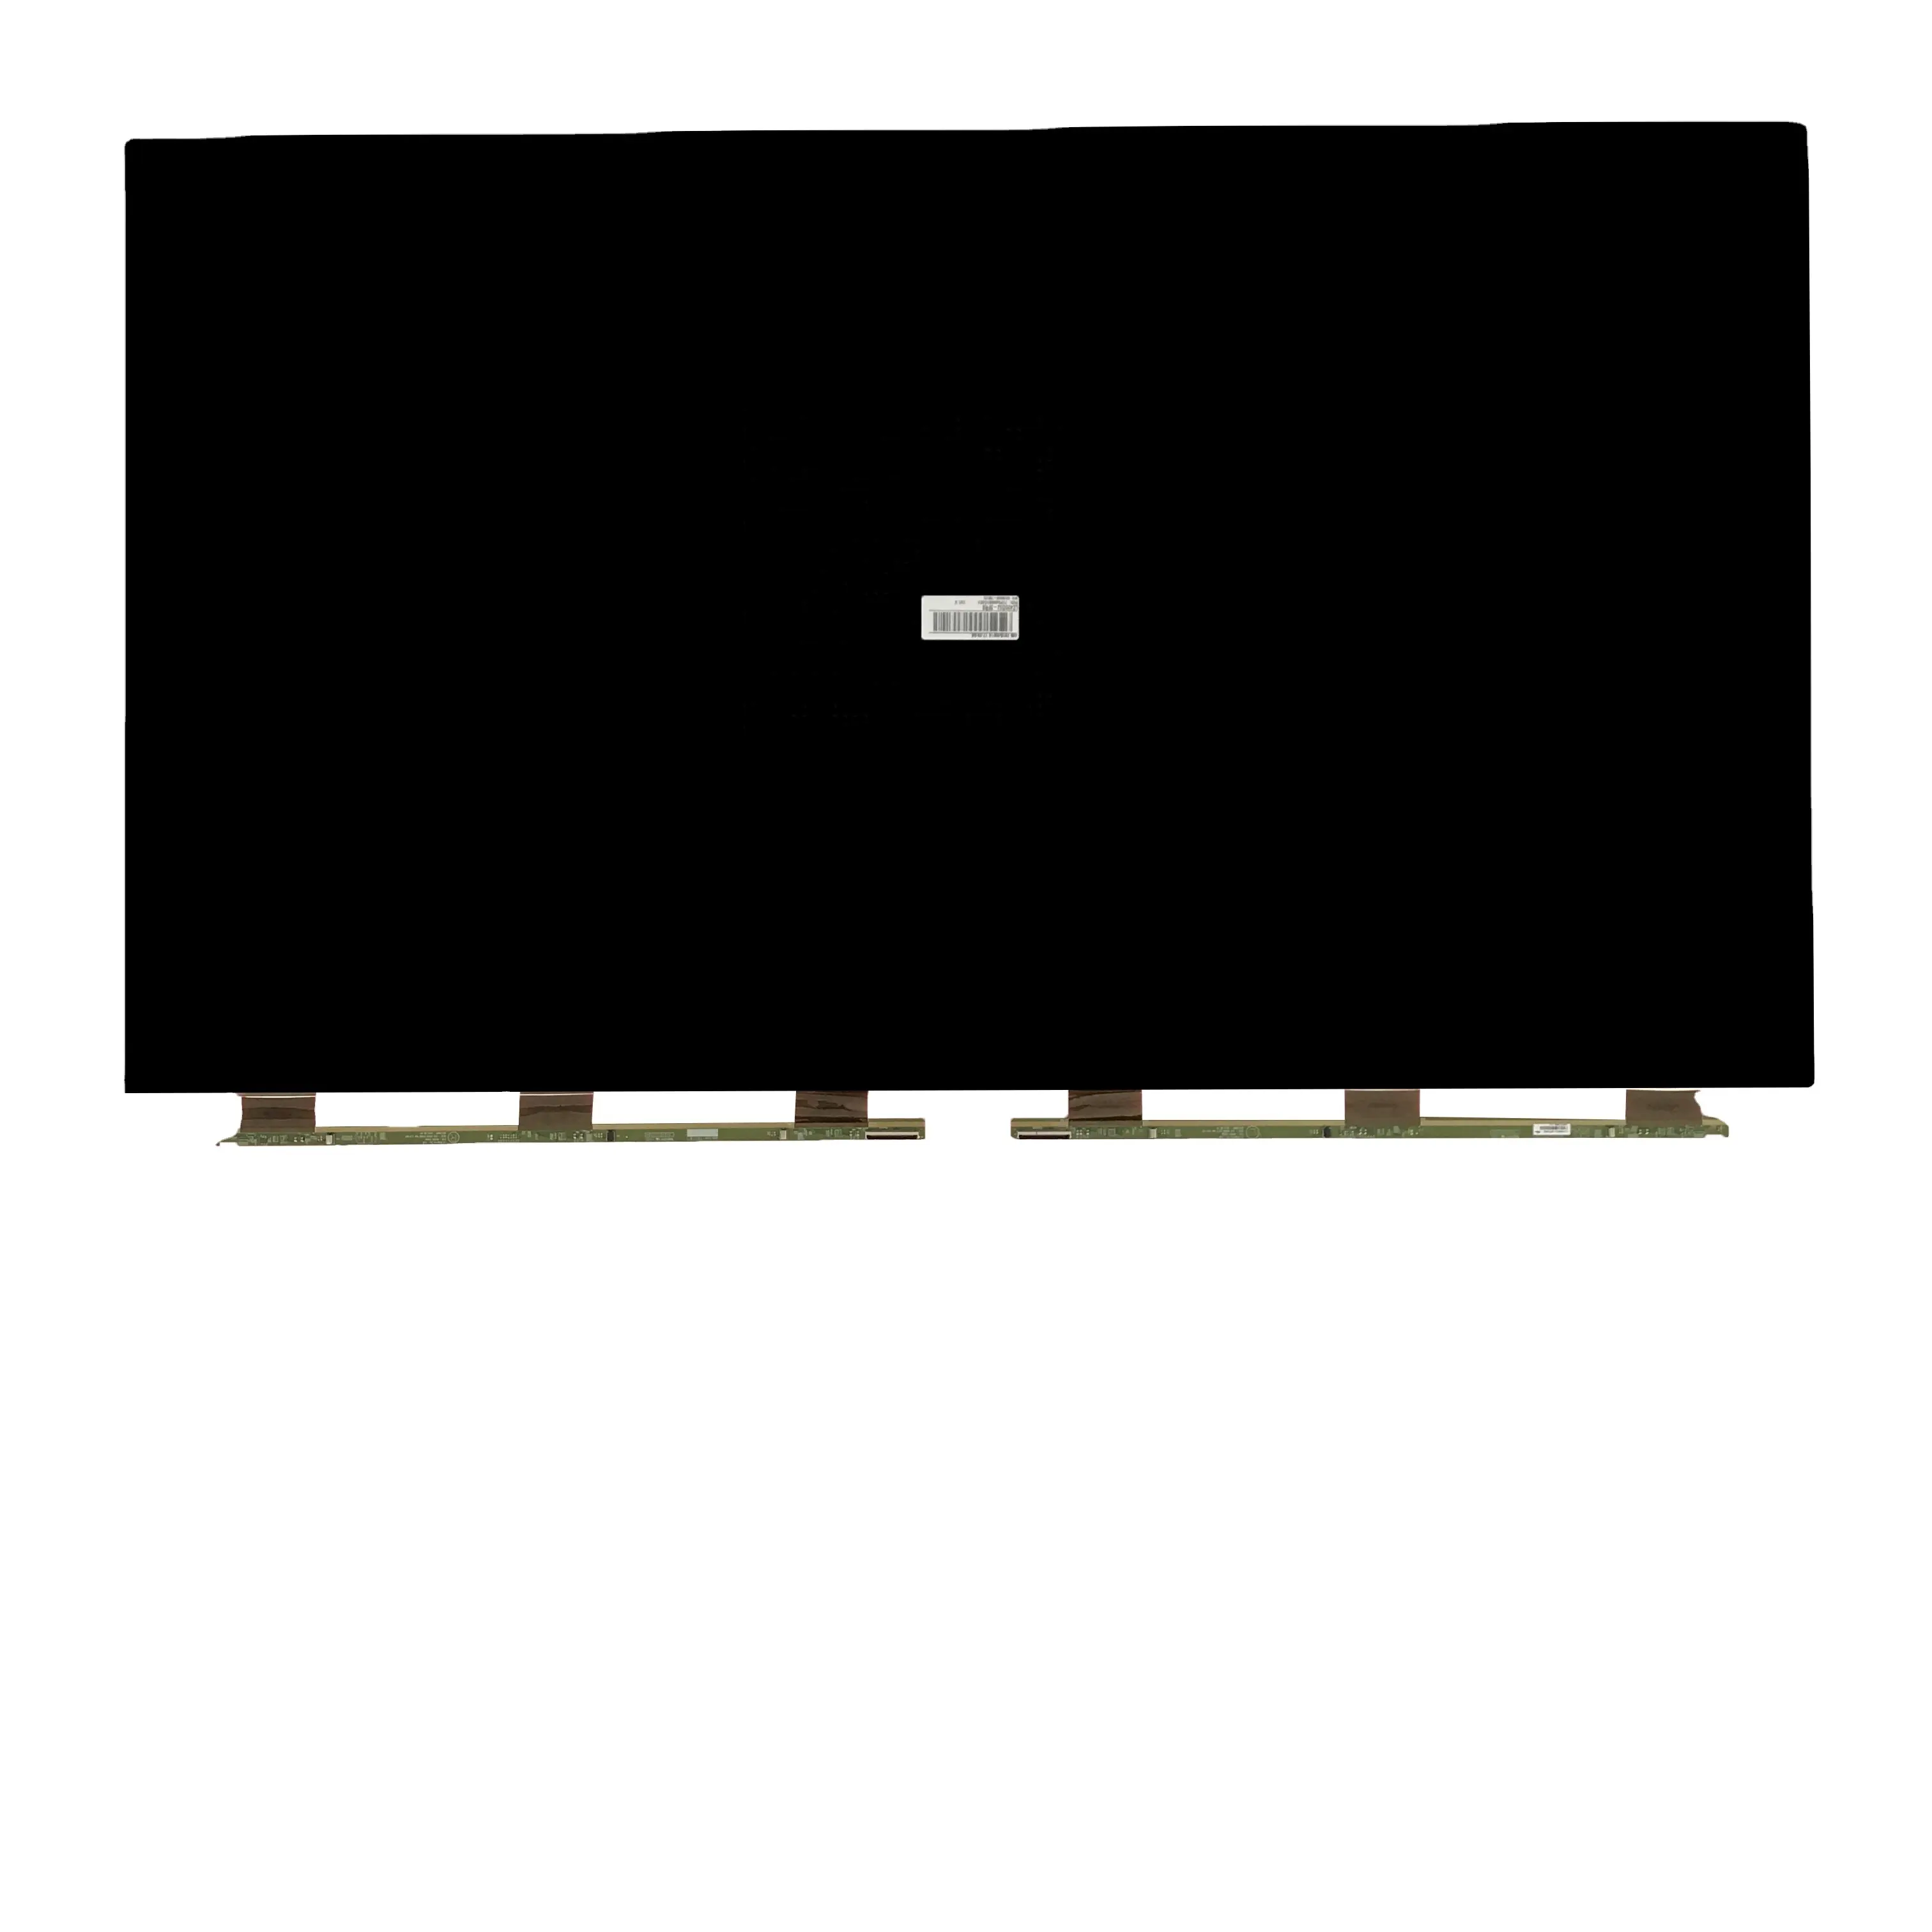 Aparelhos de TV de alta qualidade TN/STN LCD e TFT CELL Produto LG 42 POLEGADAS FHD LC420DUJ SFR3